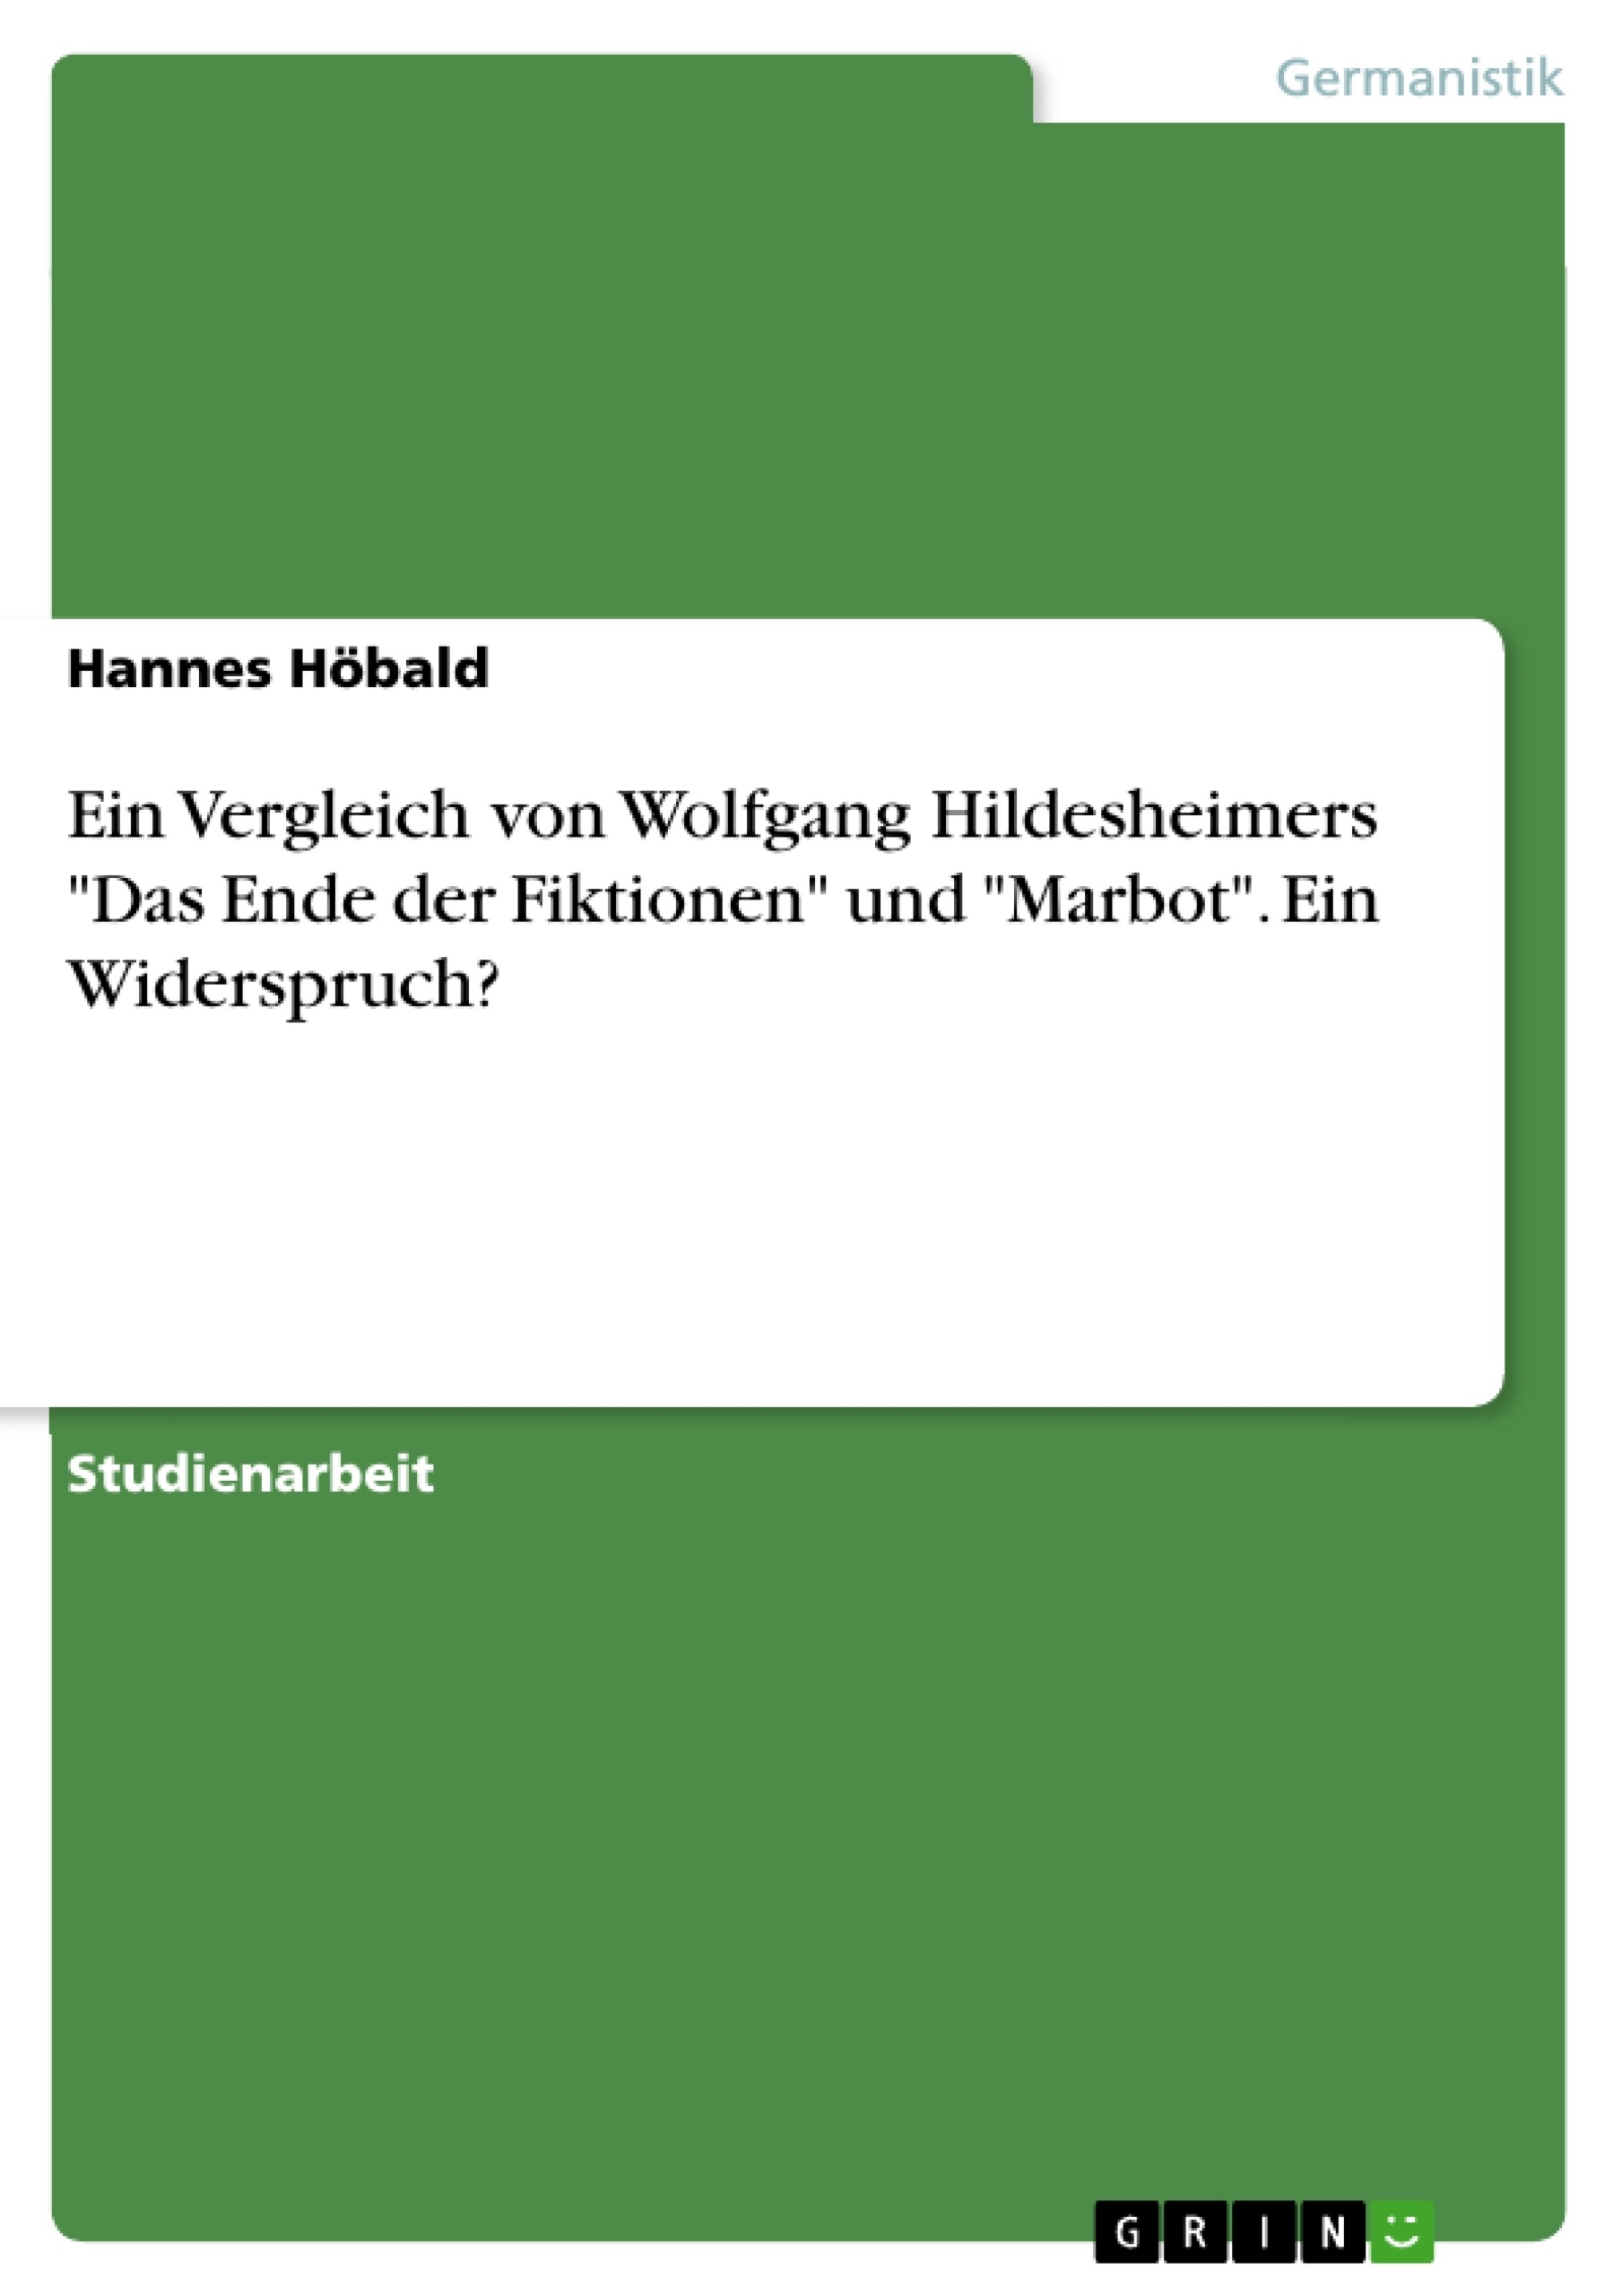 Título: Ein Vergleich von Wolfgang Hildesheimers "Das Ende der Fiktionen" und "Marbot". Ein Widerspruch?